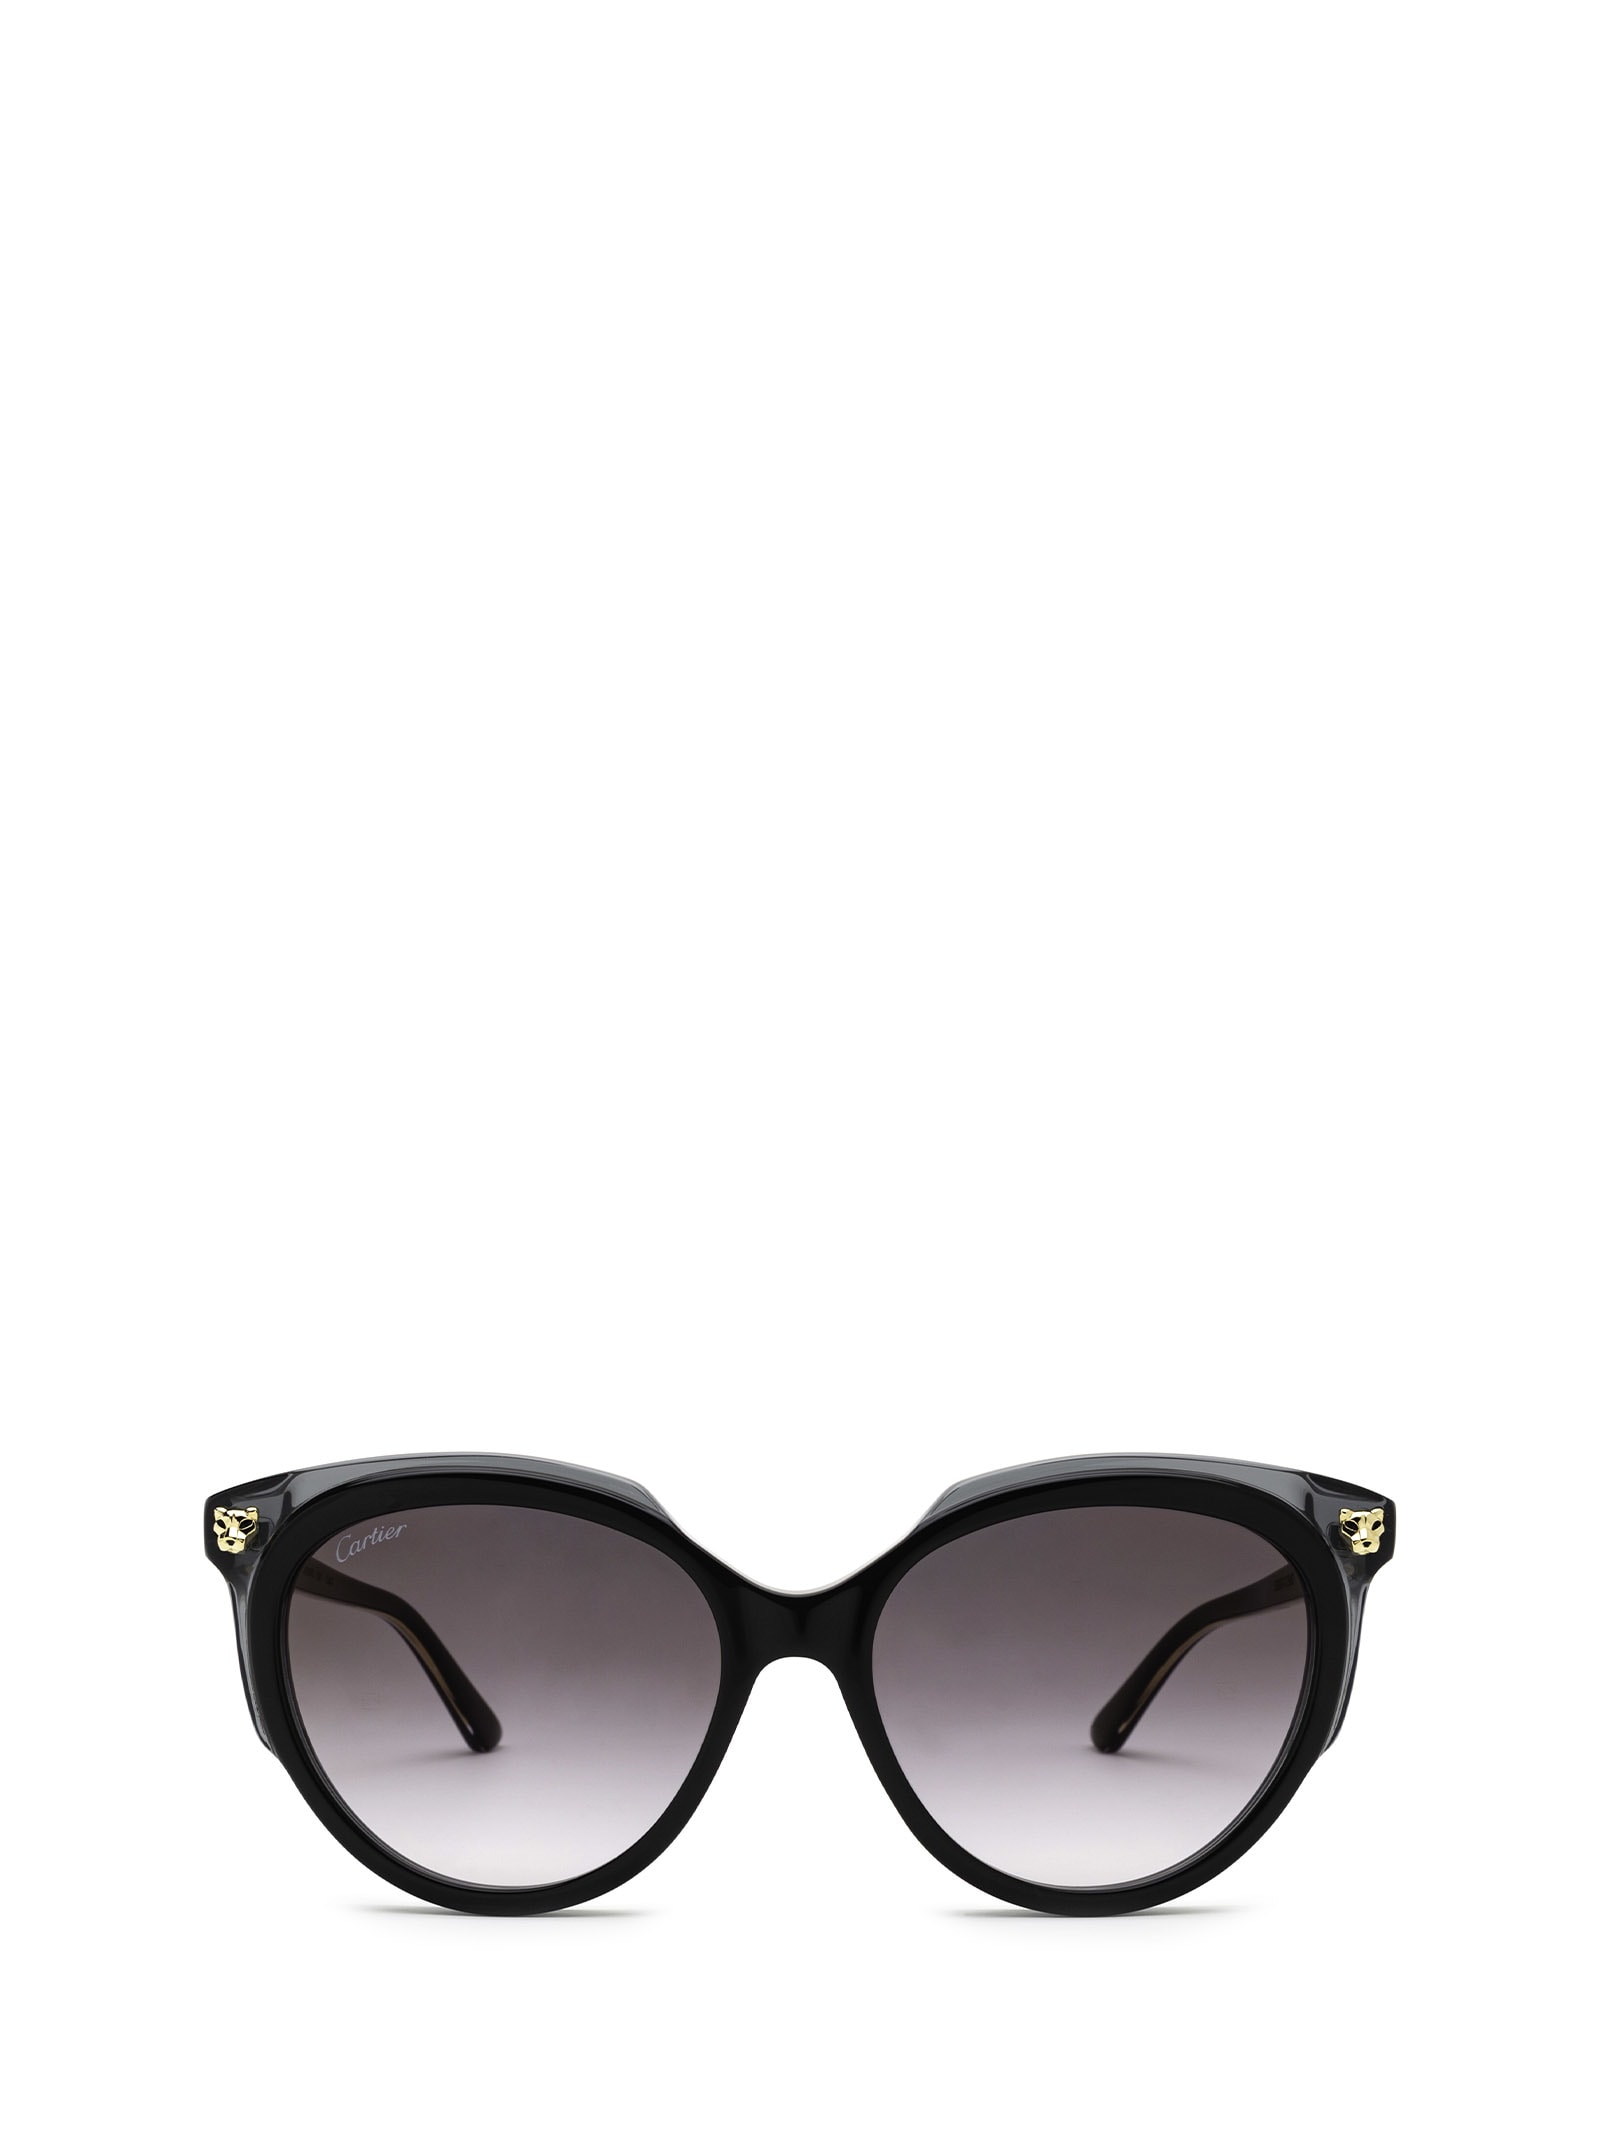 Cartier Eyewear Cartier Ct0197s Black Sunglasses